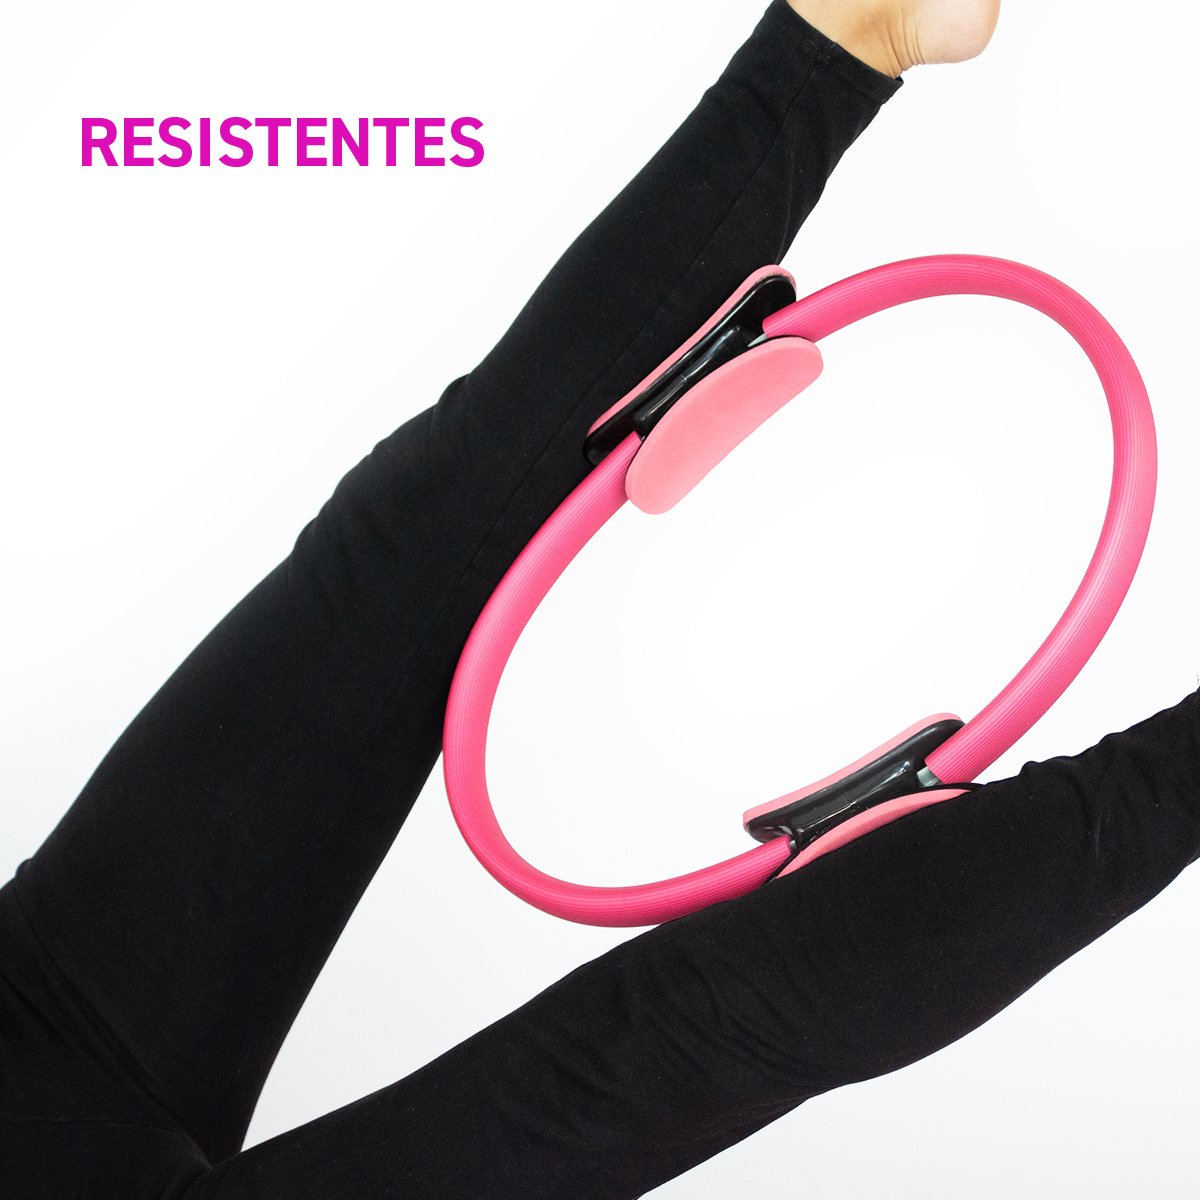 Aro de Resistencia para Yoga, Pilates y Fitness color Negro